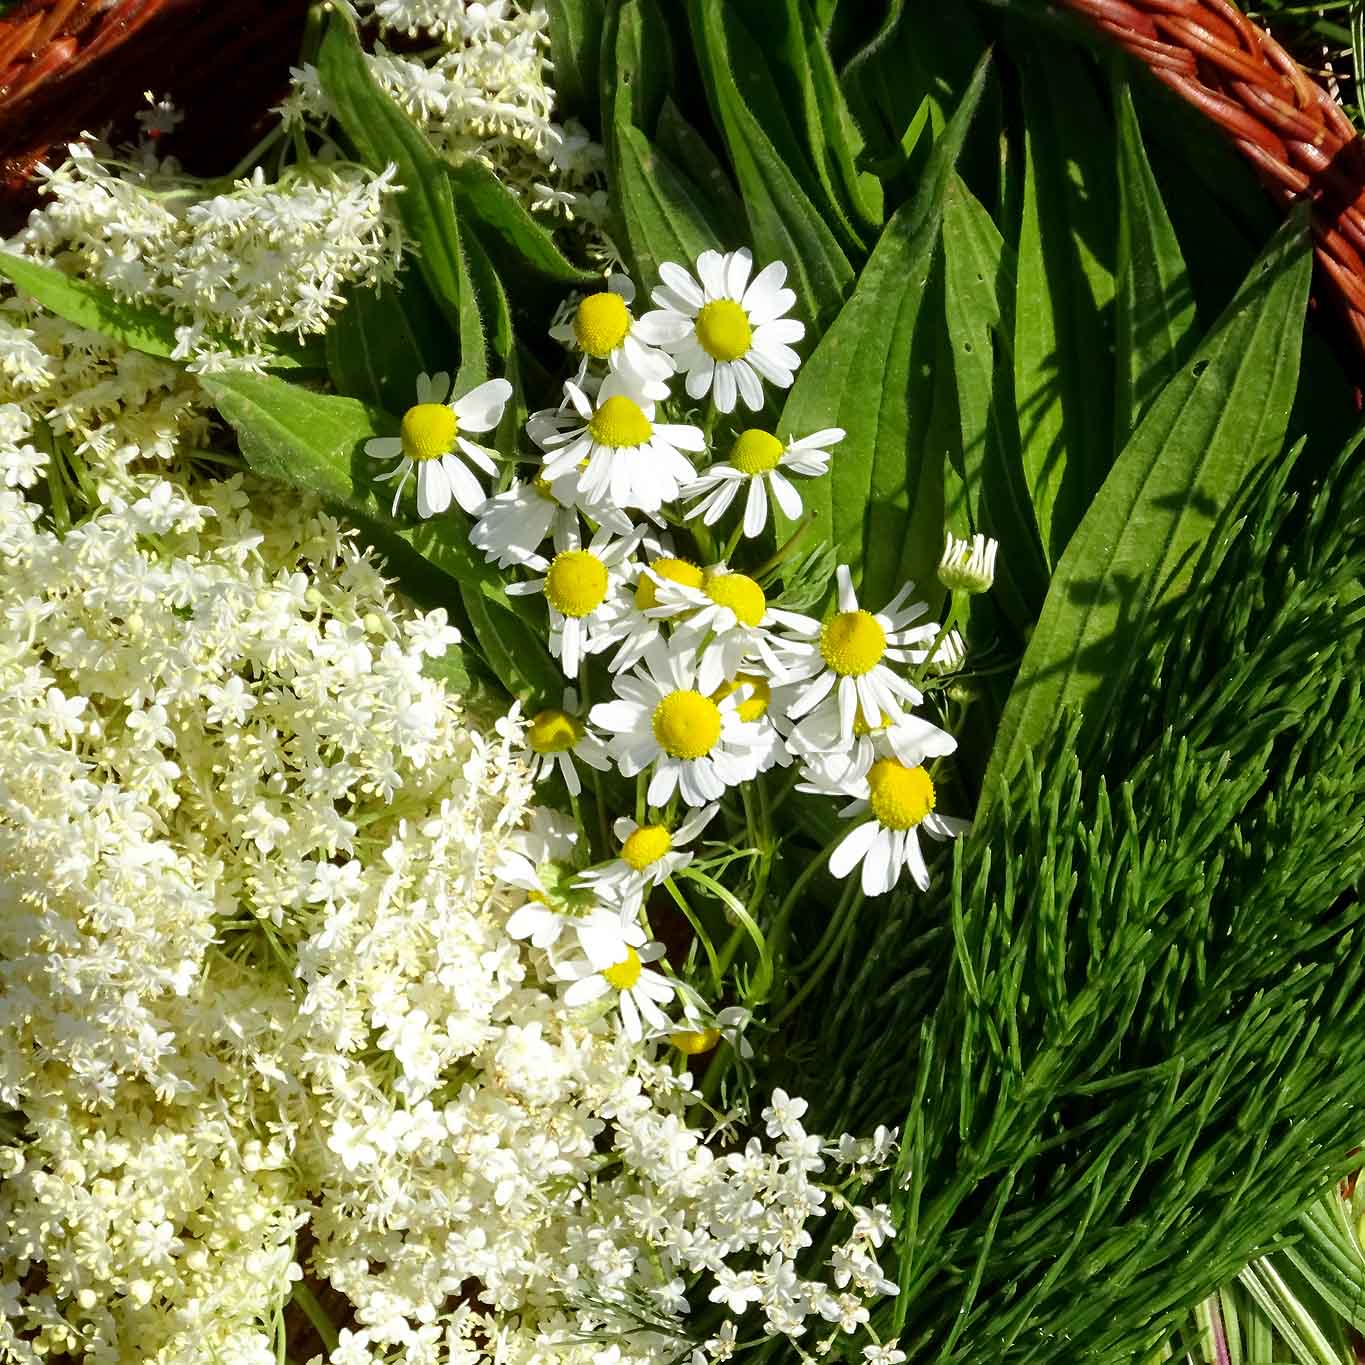 Vorschläge zum Sammeln von Kräutern im Monat Juni: Holunder, Ackerschachtelhalm, Spitzwegerichblätter, Kamillleblüten.